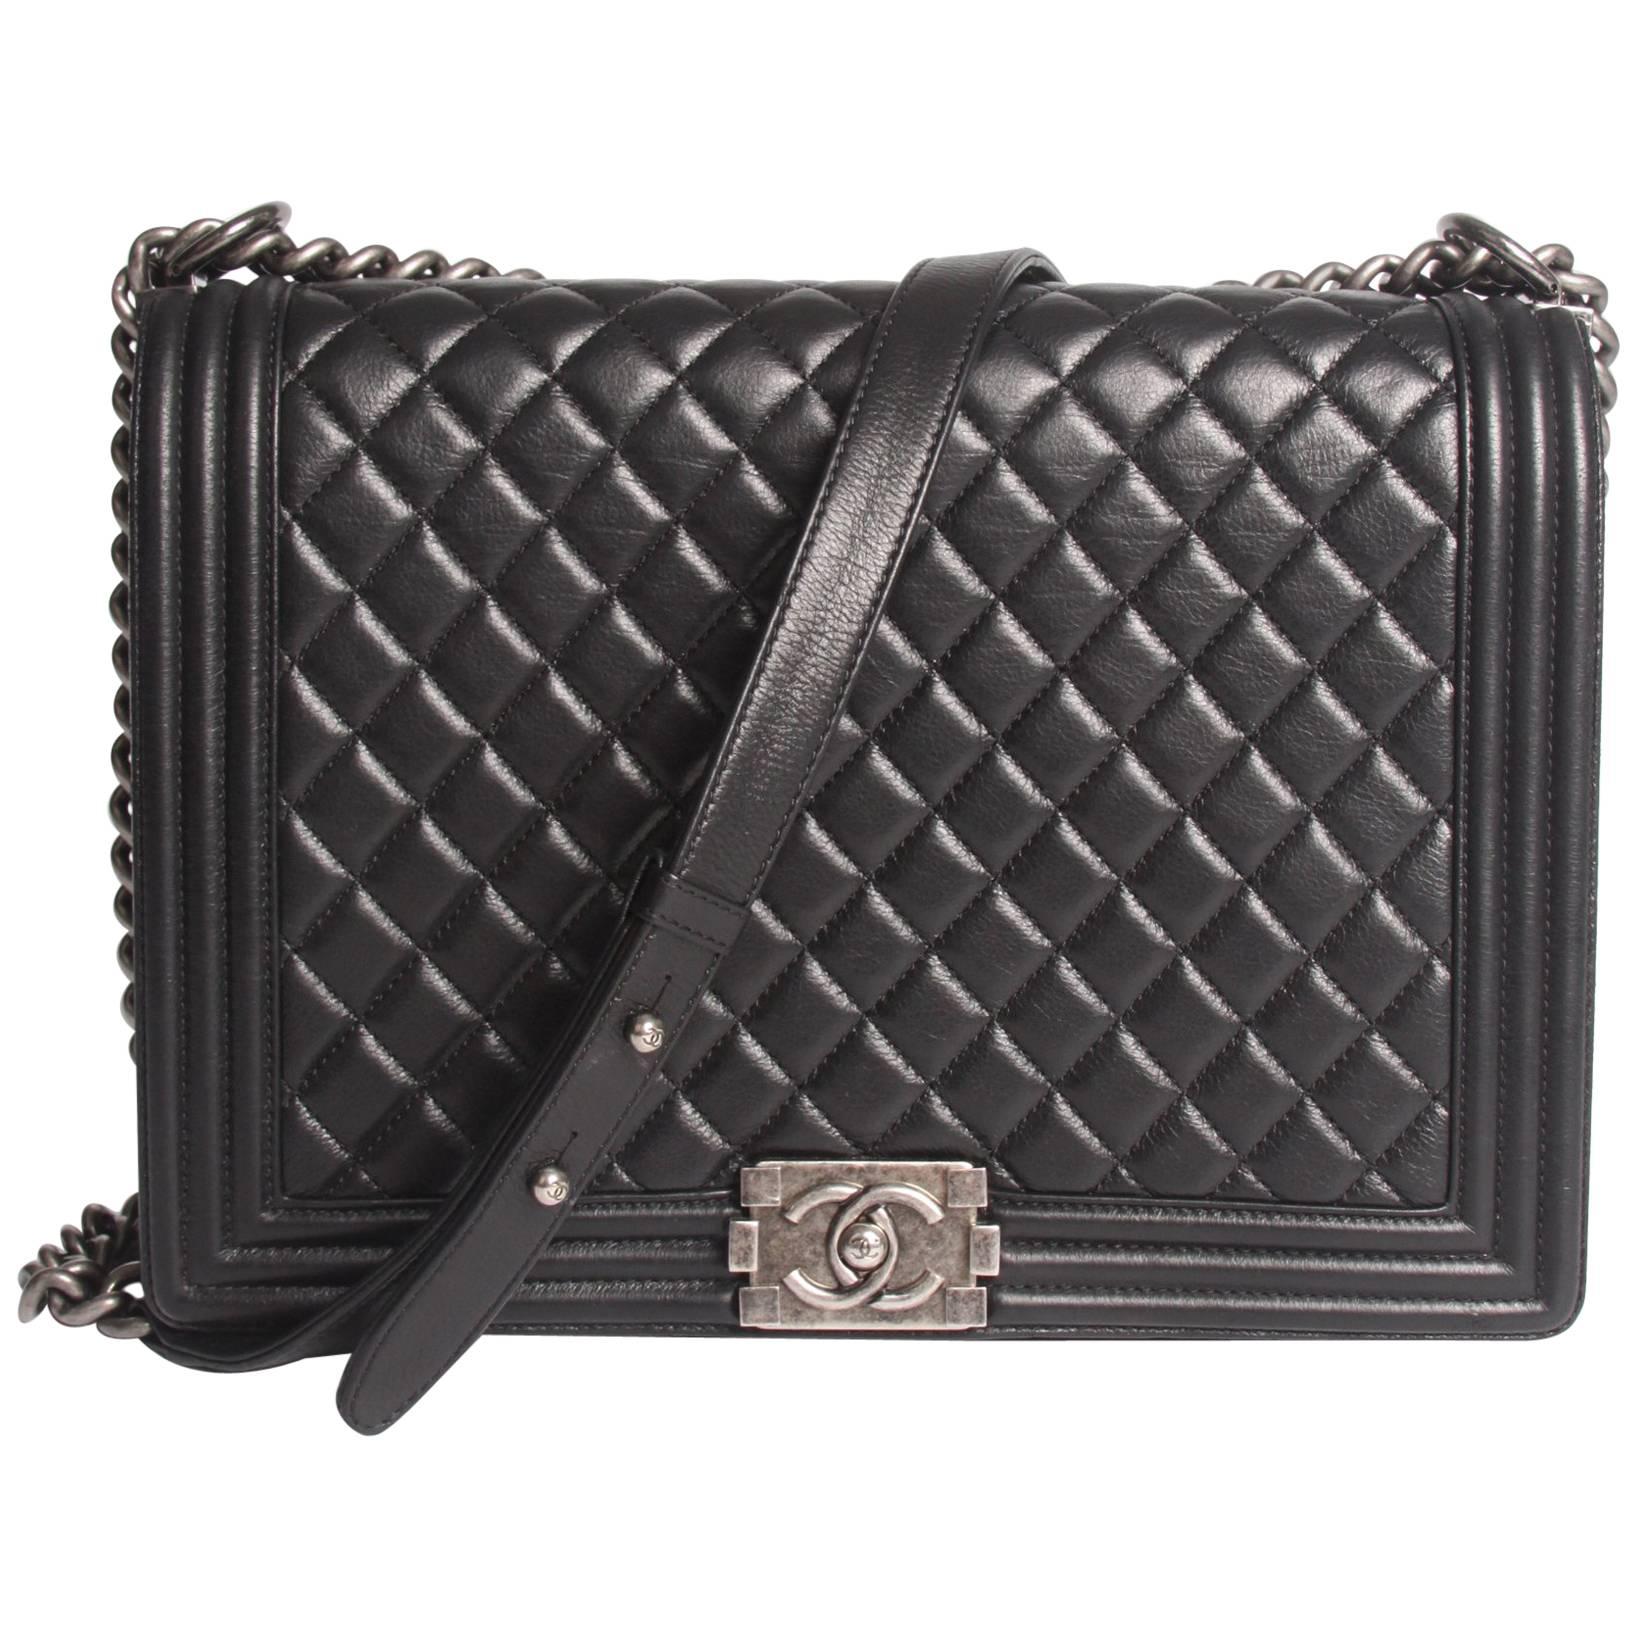 Chanel Boy Bag Large - black leather 